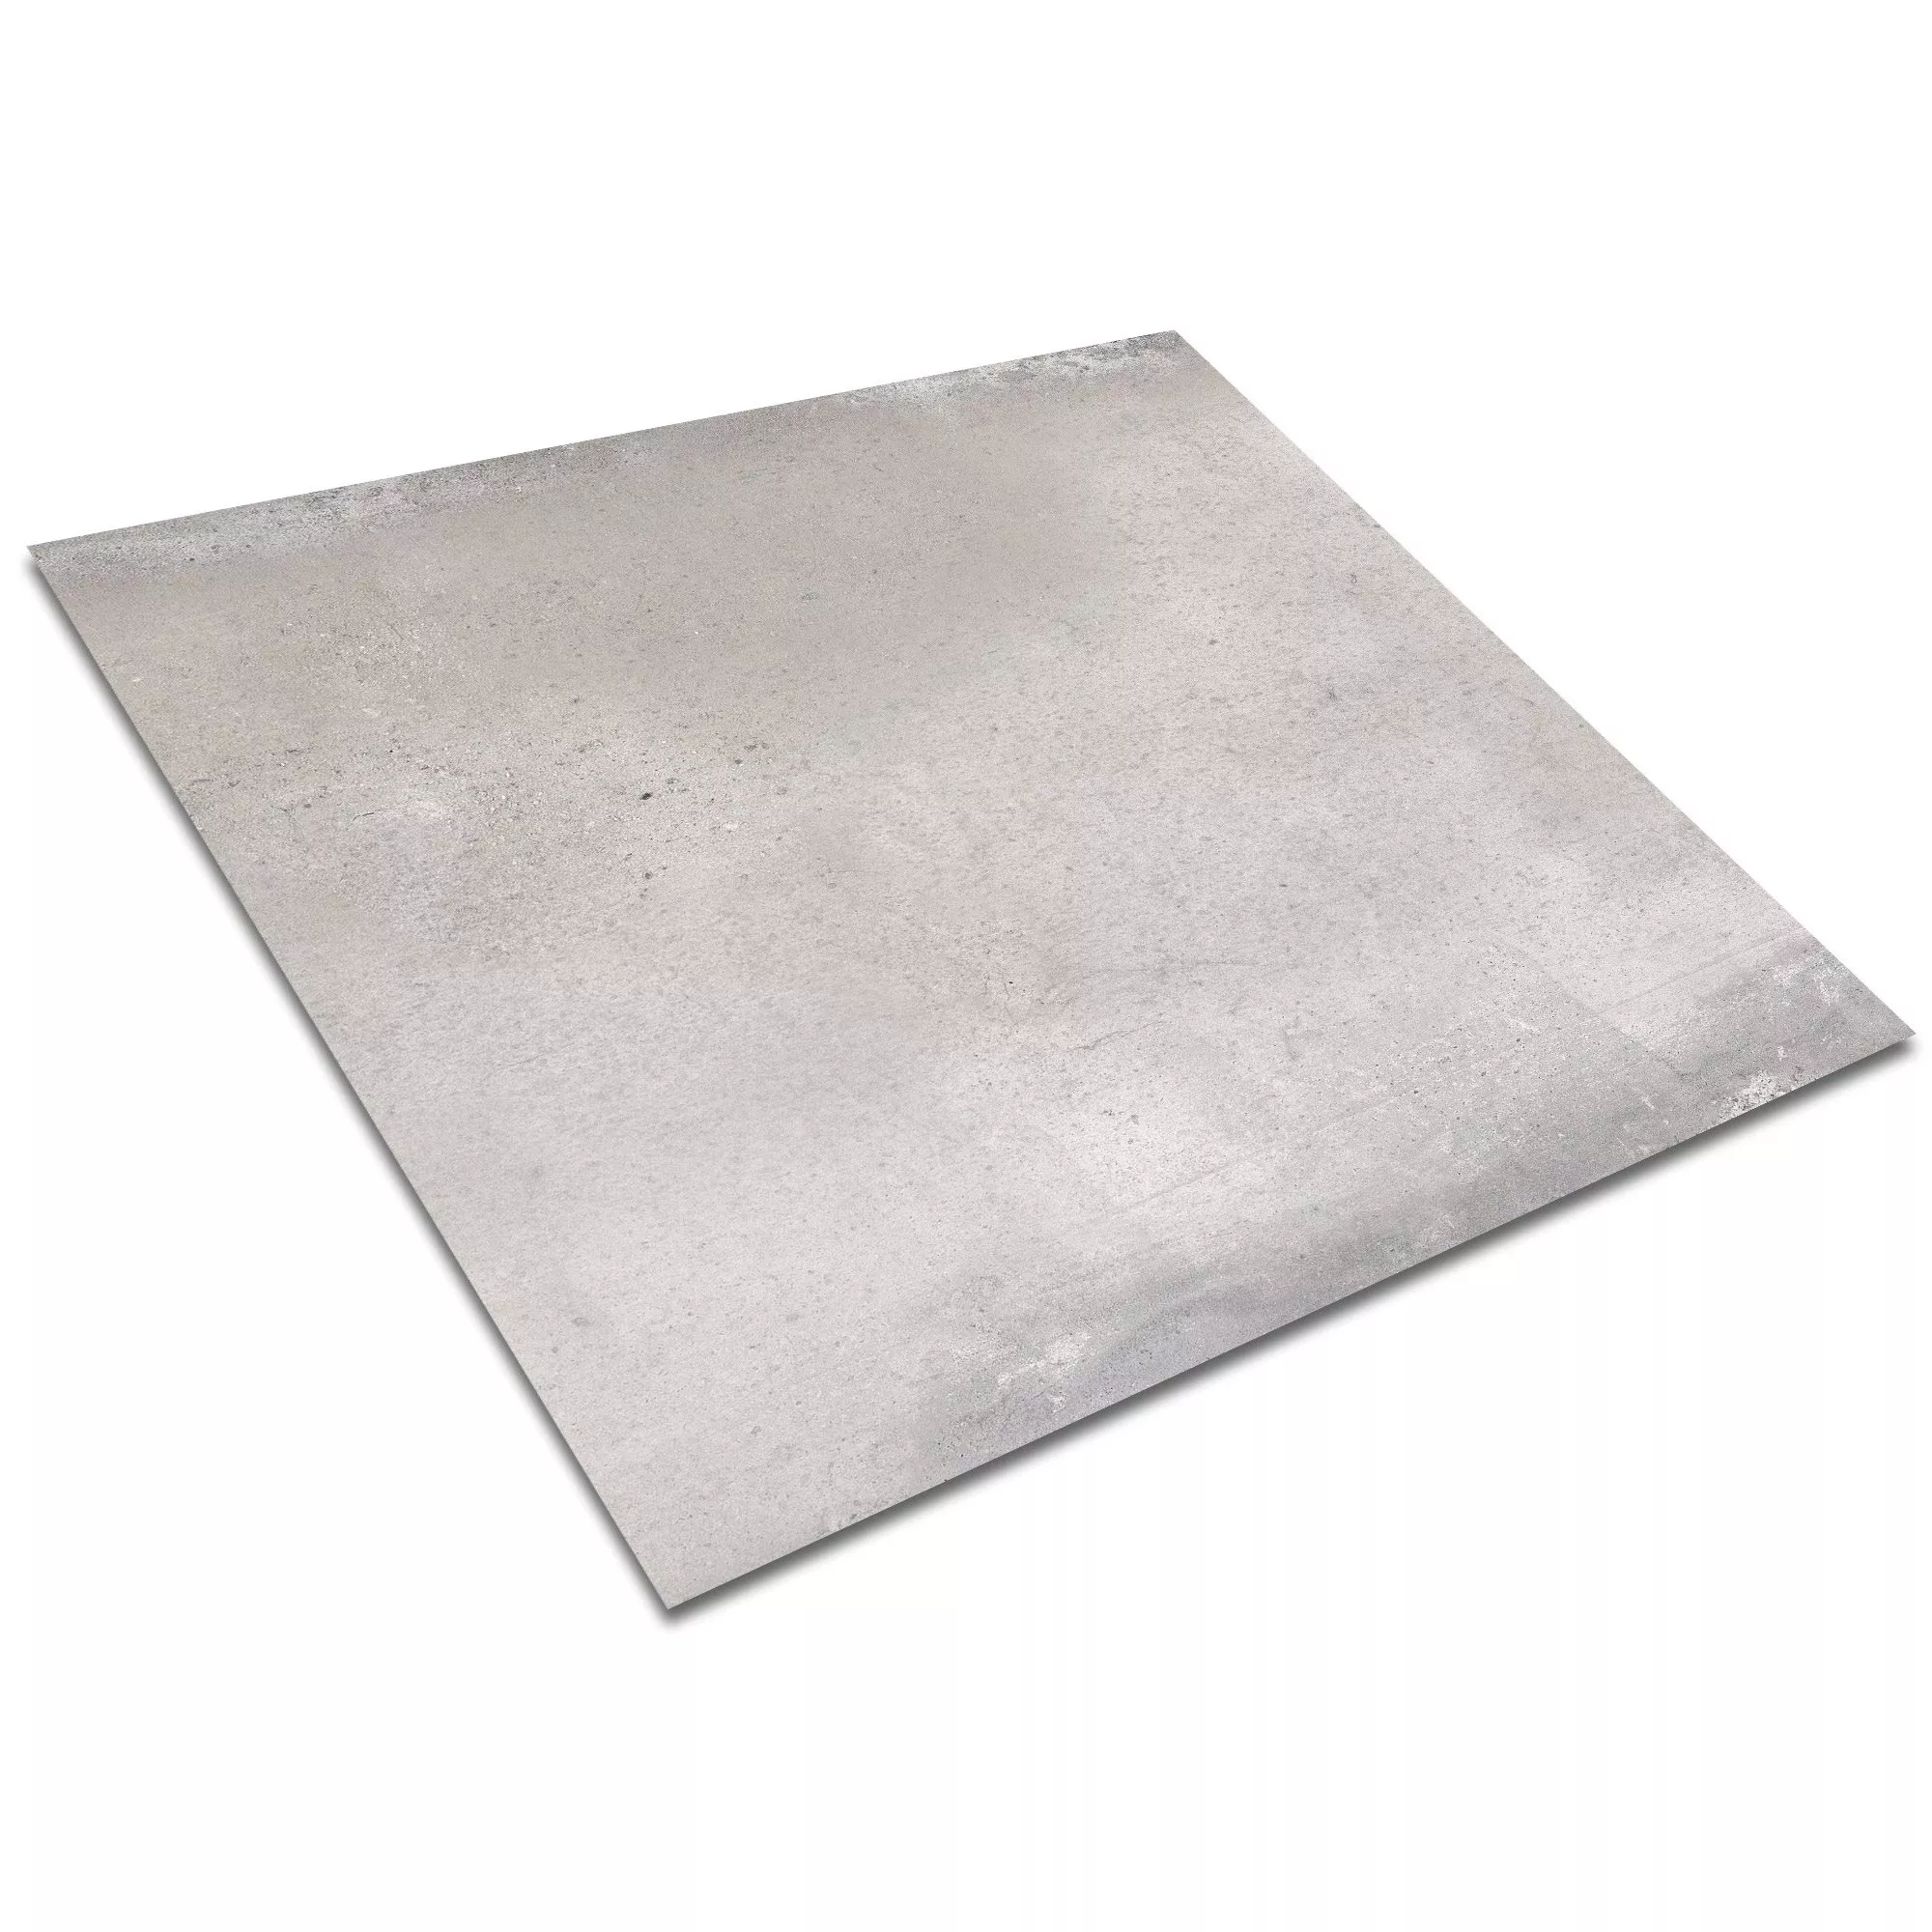 Vloertegels Cement Optic Maryland Grijs 60x60cm